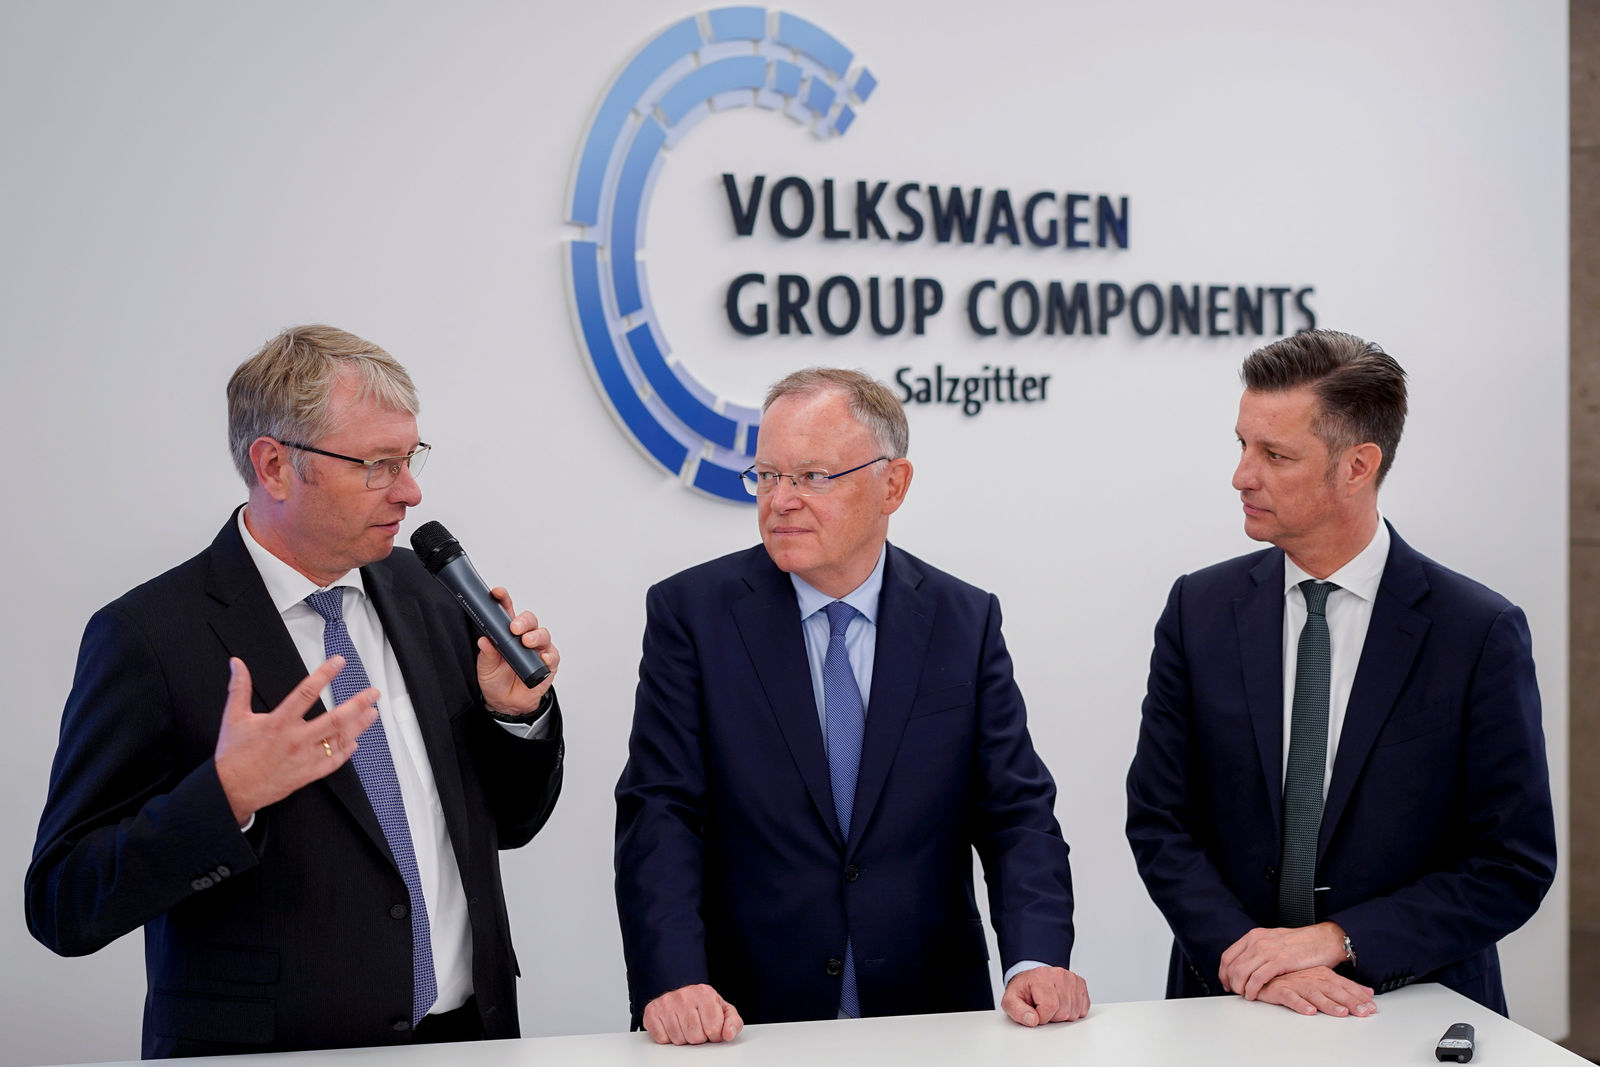 Ministerpräsident Stephan Weil heute im Volkswagen Werk Salzgitter - nächster Schritt des Wandels in die E-Mobilität mit Northvolt-Kooperation eingeleitet